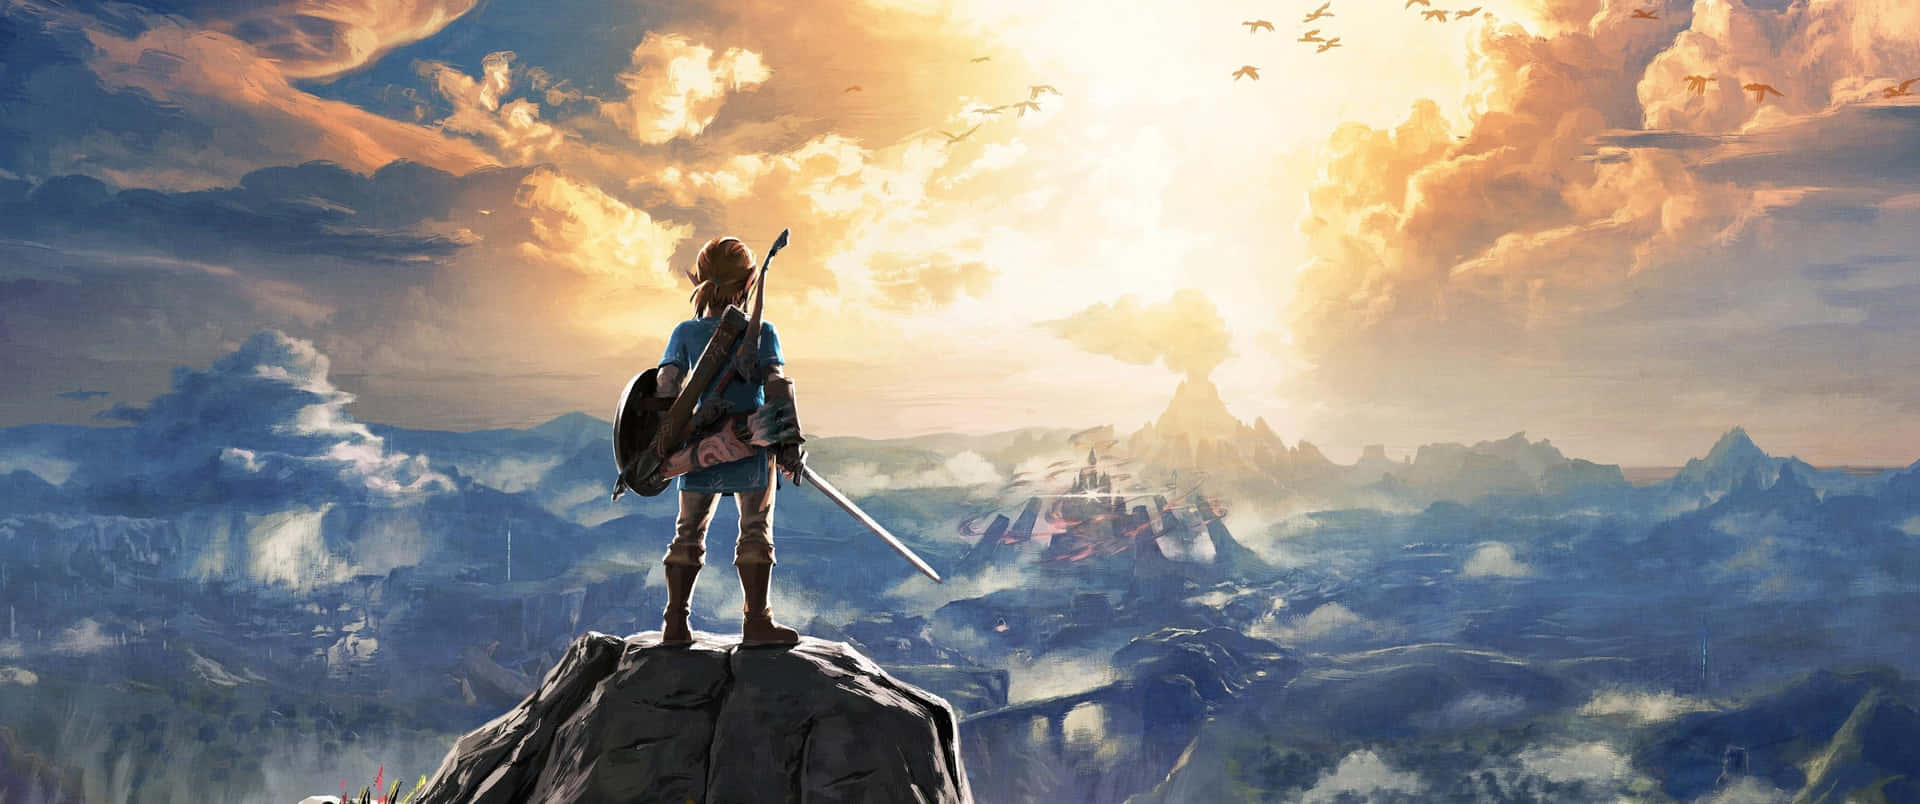 The Legend Of Zelda Breath Of The Wild Wallpaper